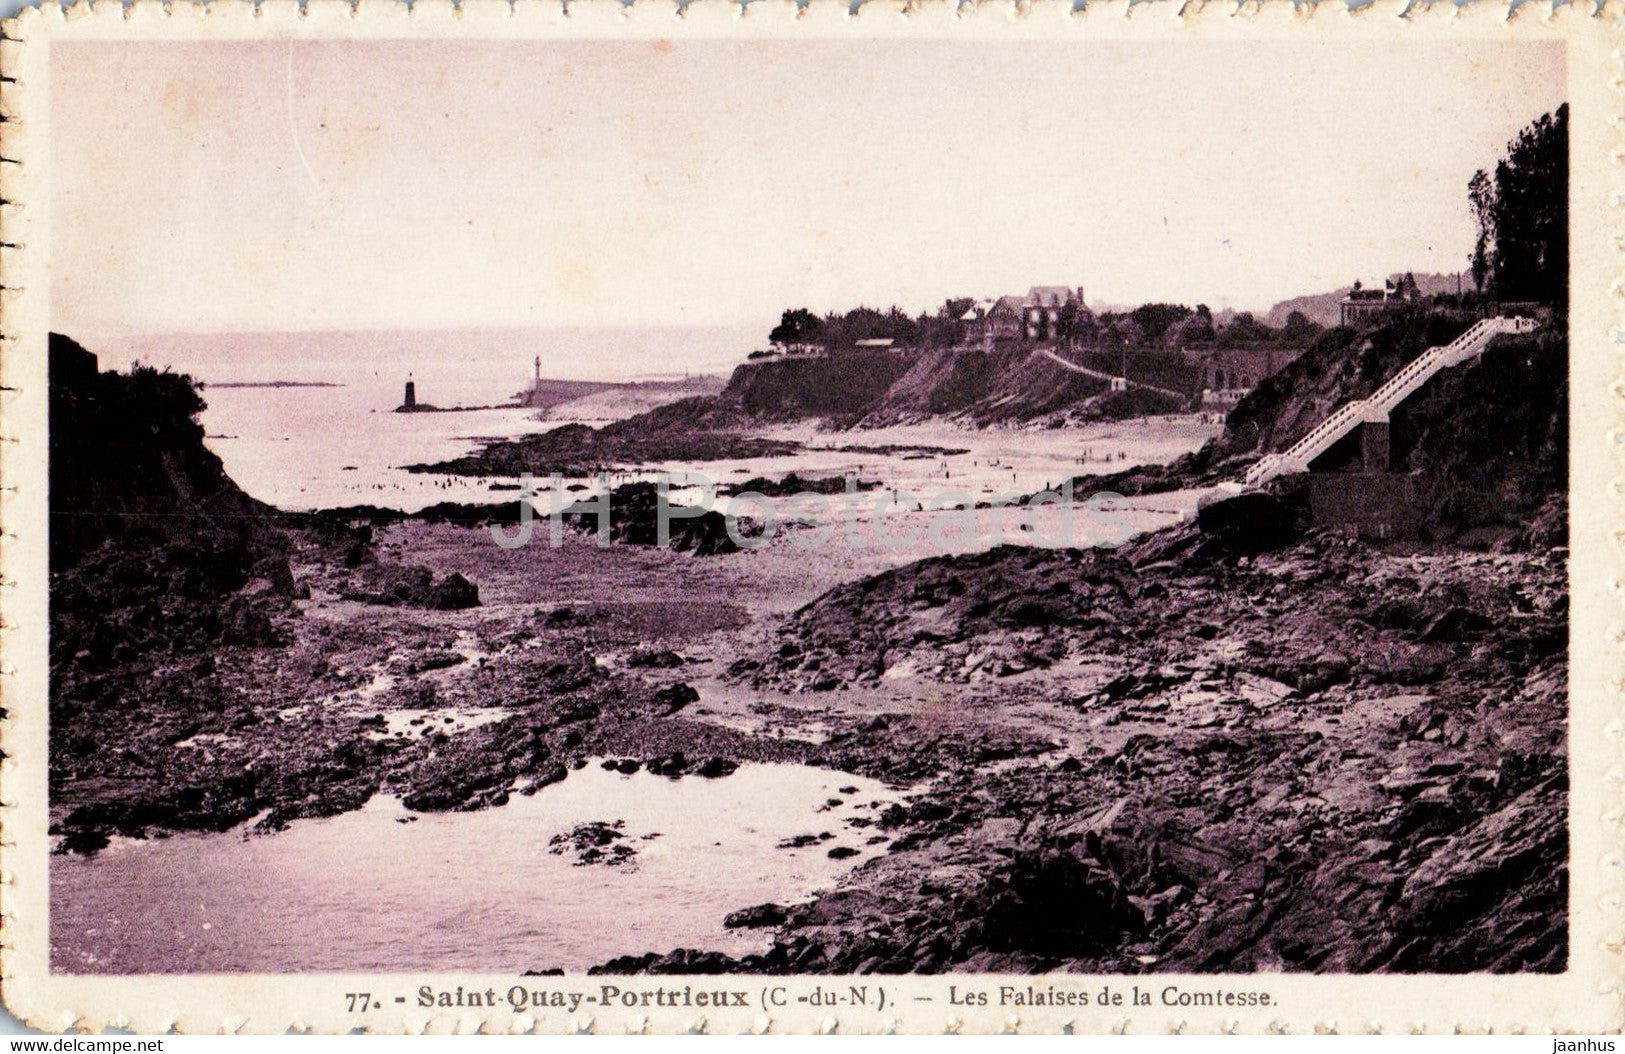 Saint Quay Portieux - Les Falaises de la Comtesse - 77 - old postcard - France - used - JH Postcards